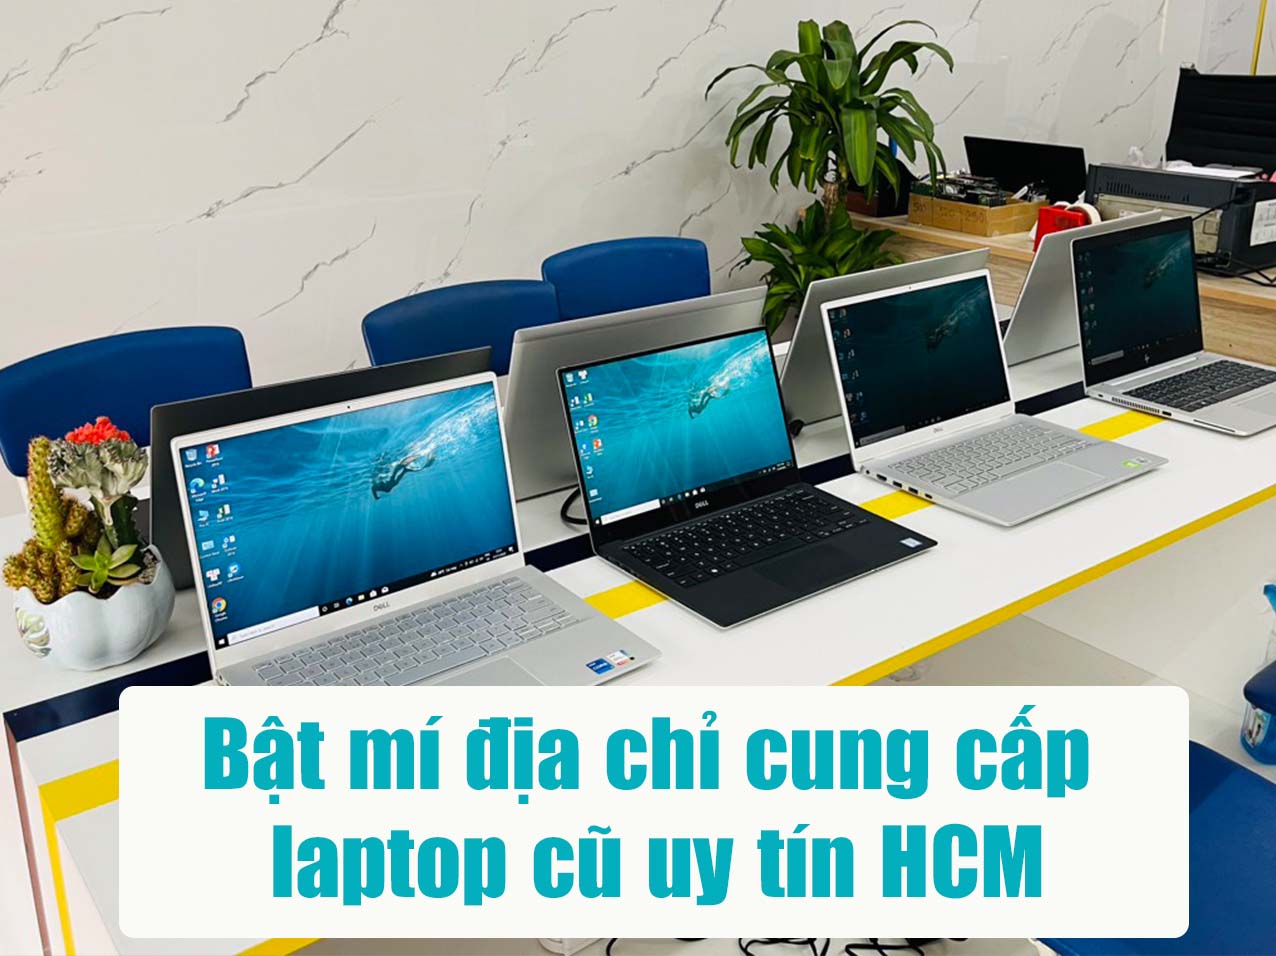 Bật mí địa chỉ cung cấp laptop cũ uy tín HCM dành cho mọi khách hàng